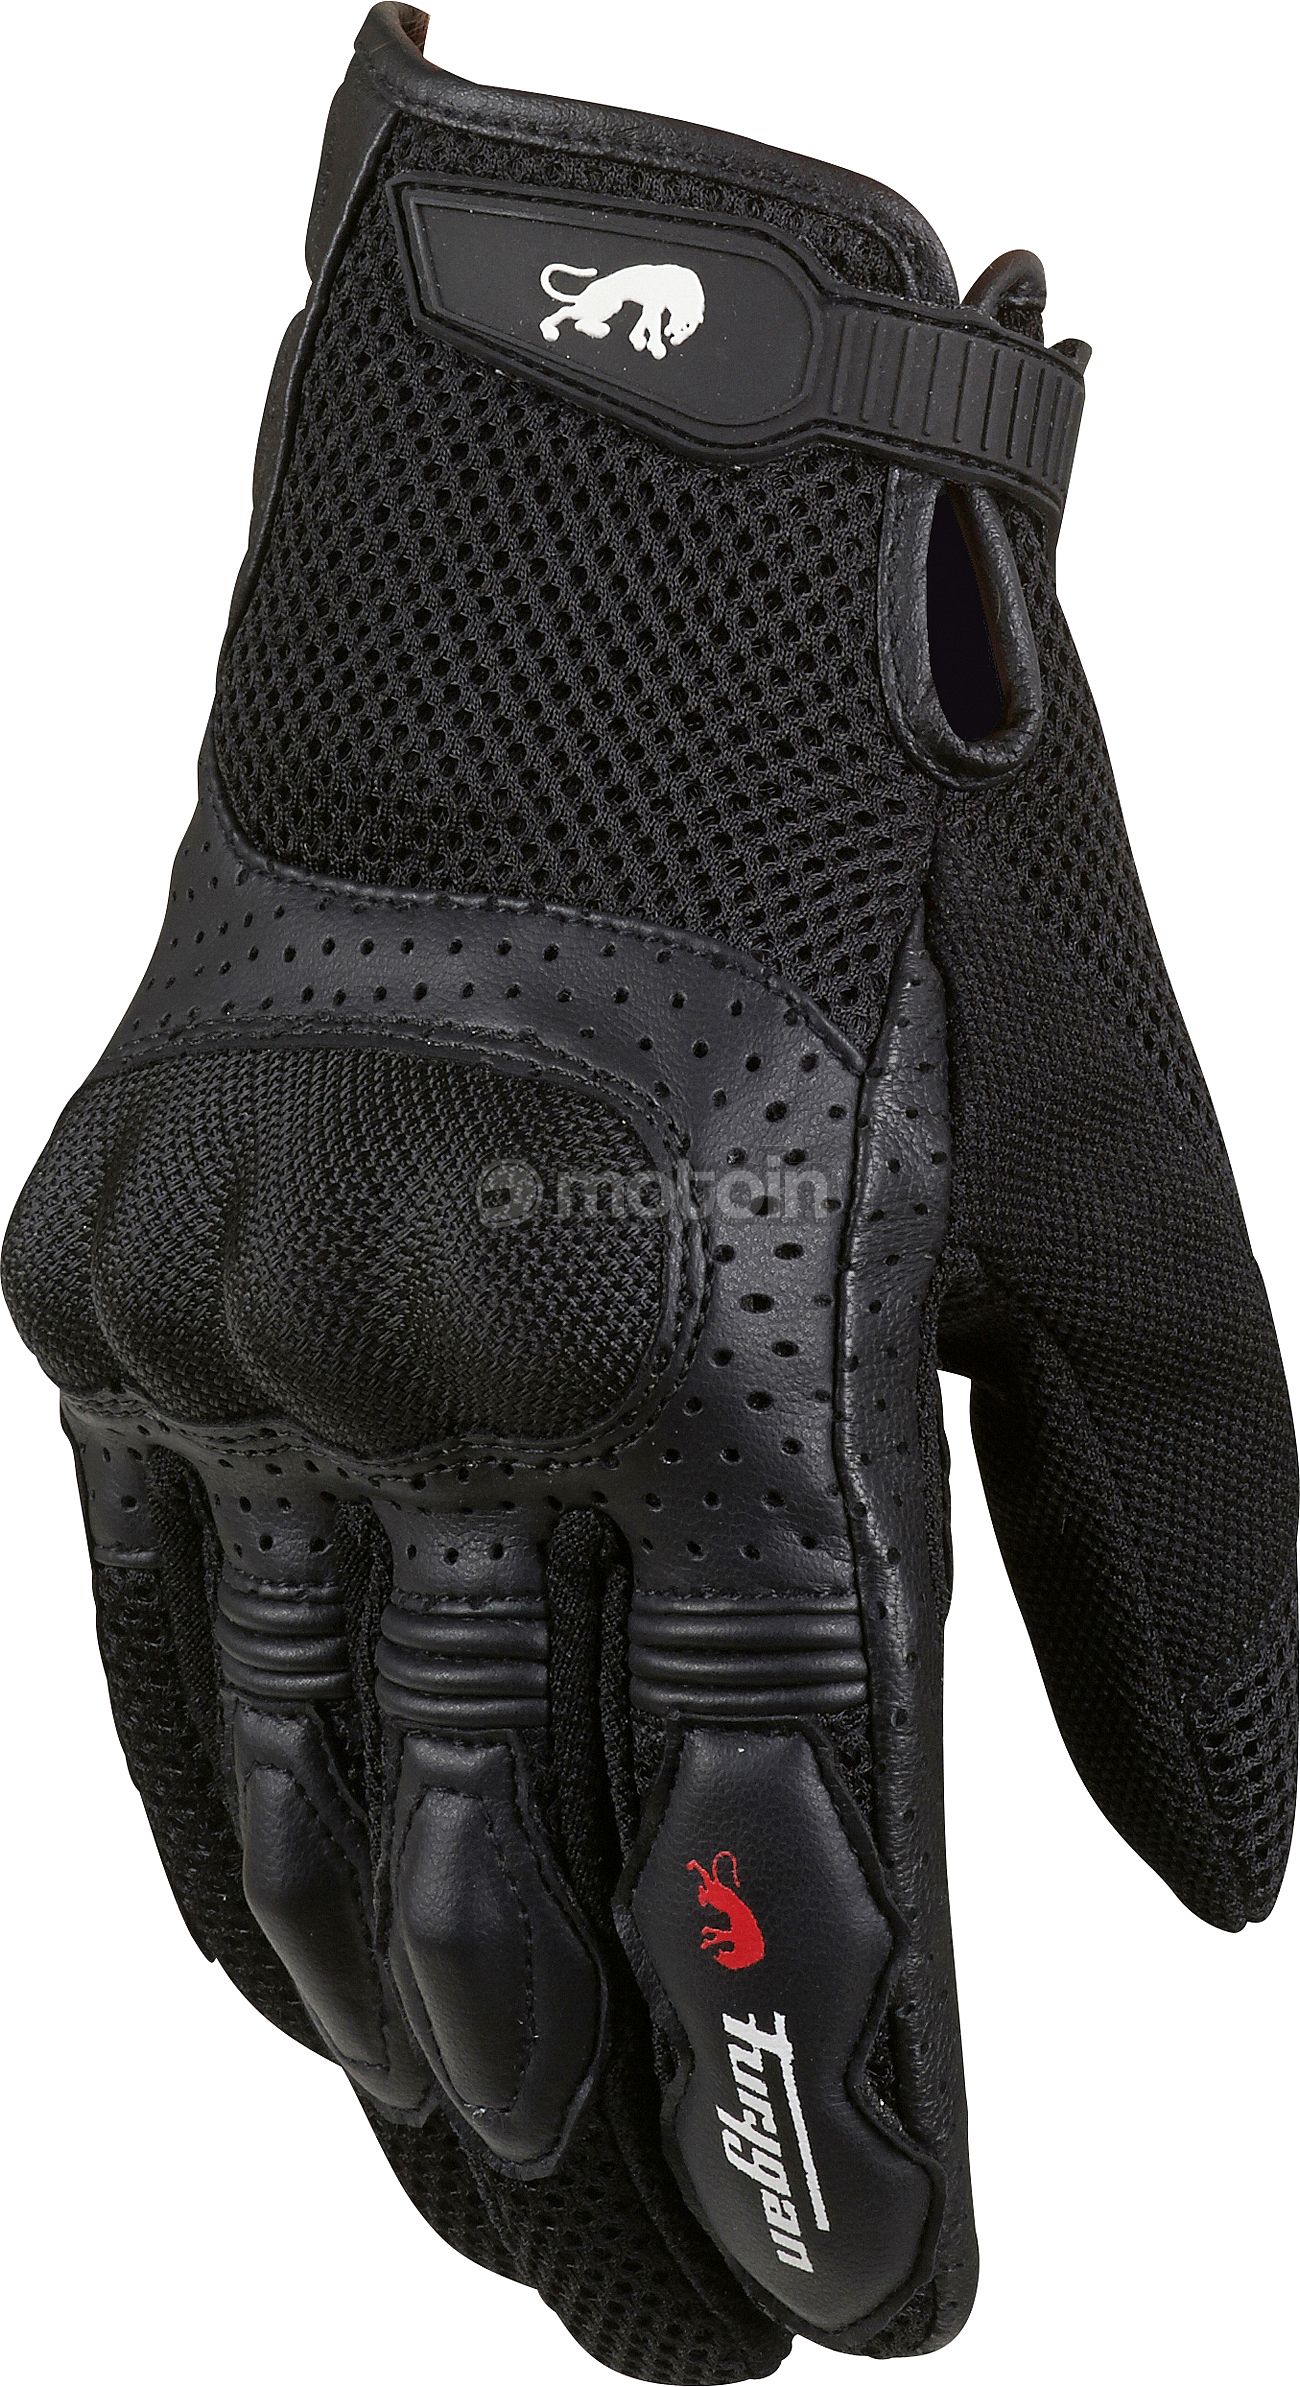 Furygan TD12, gloves